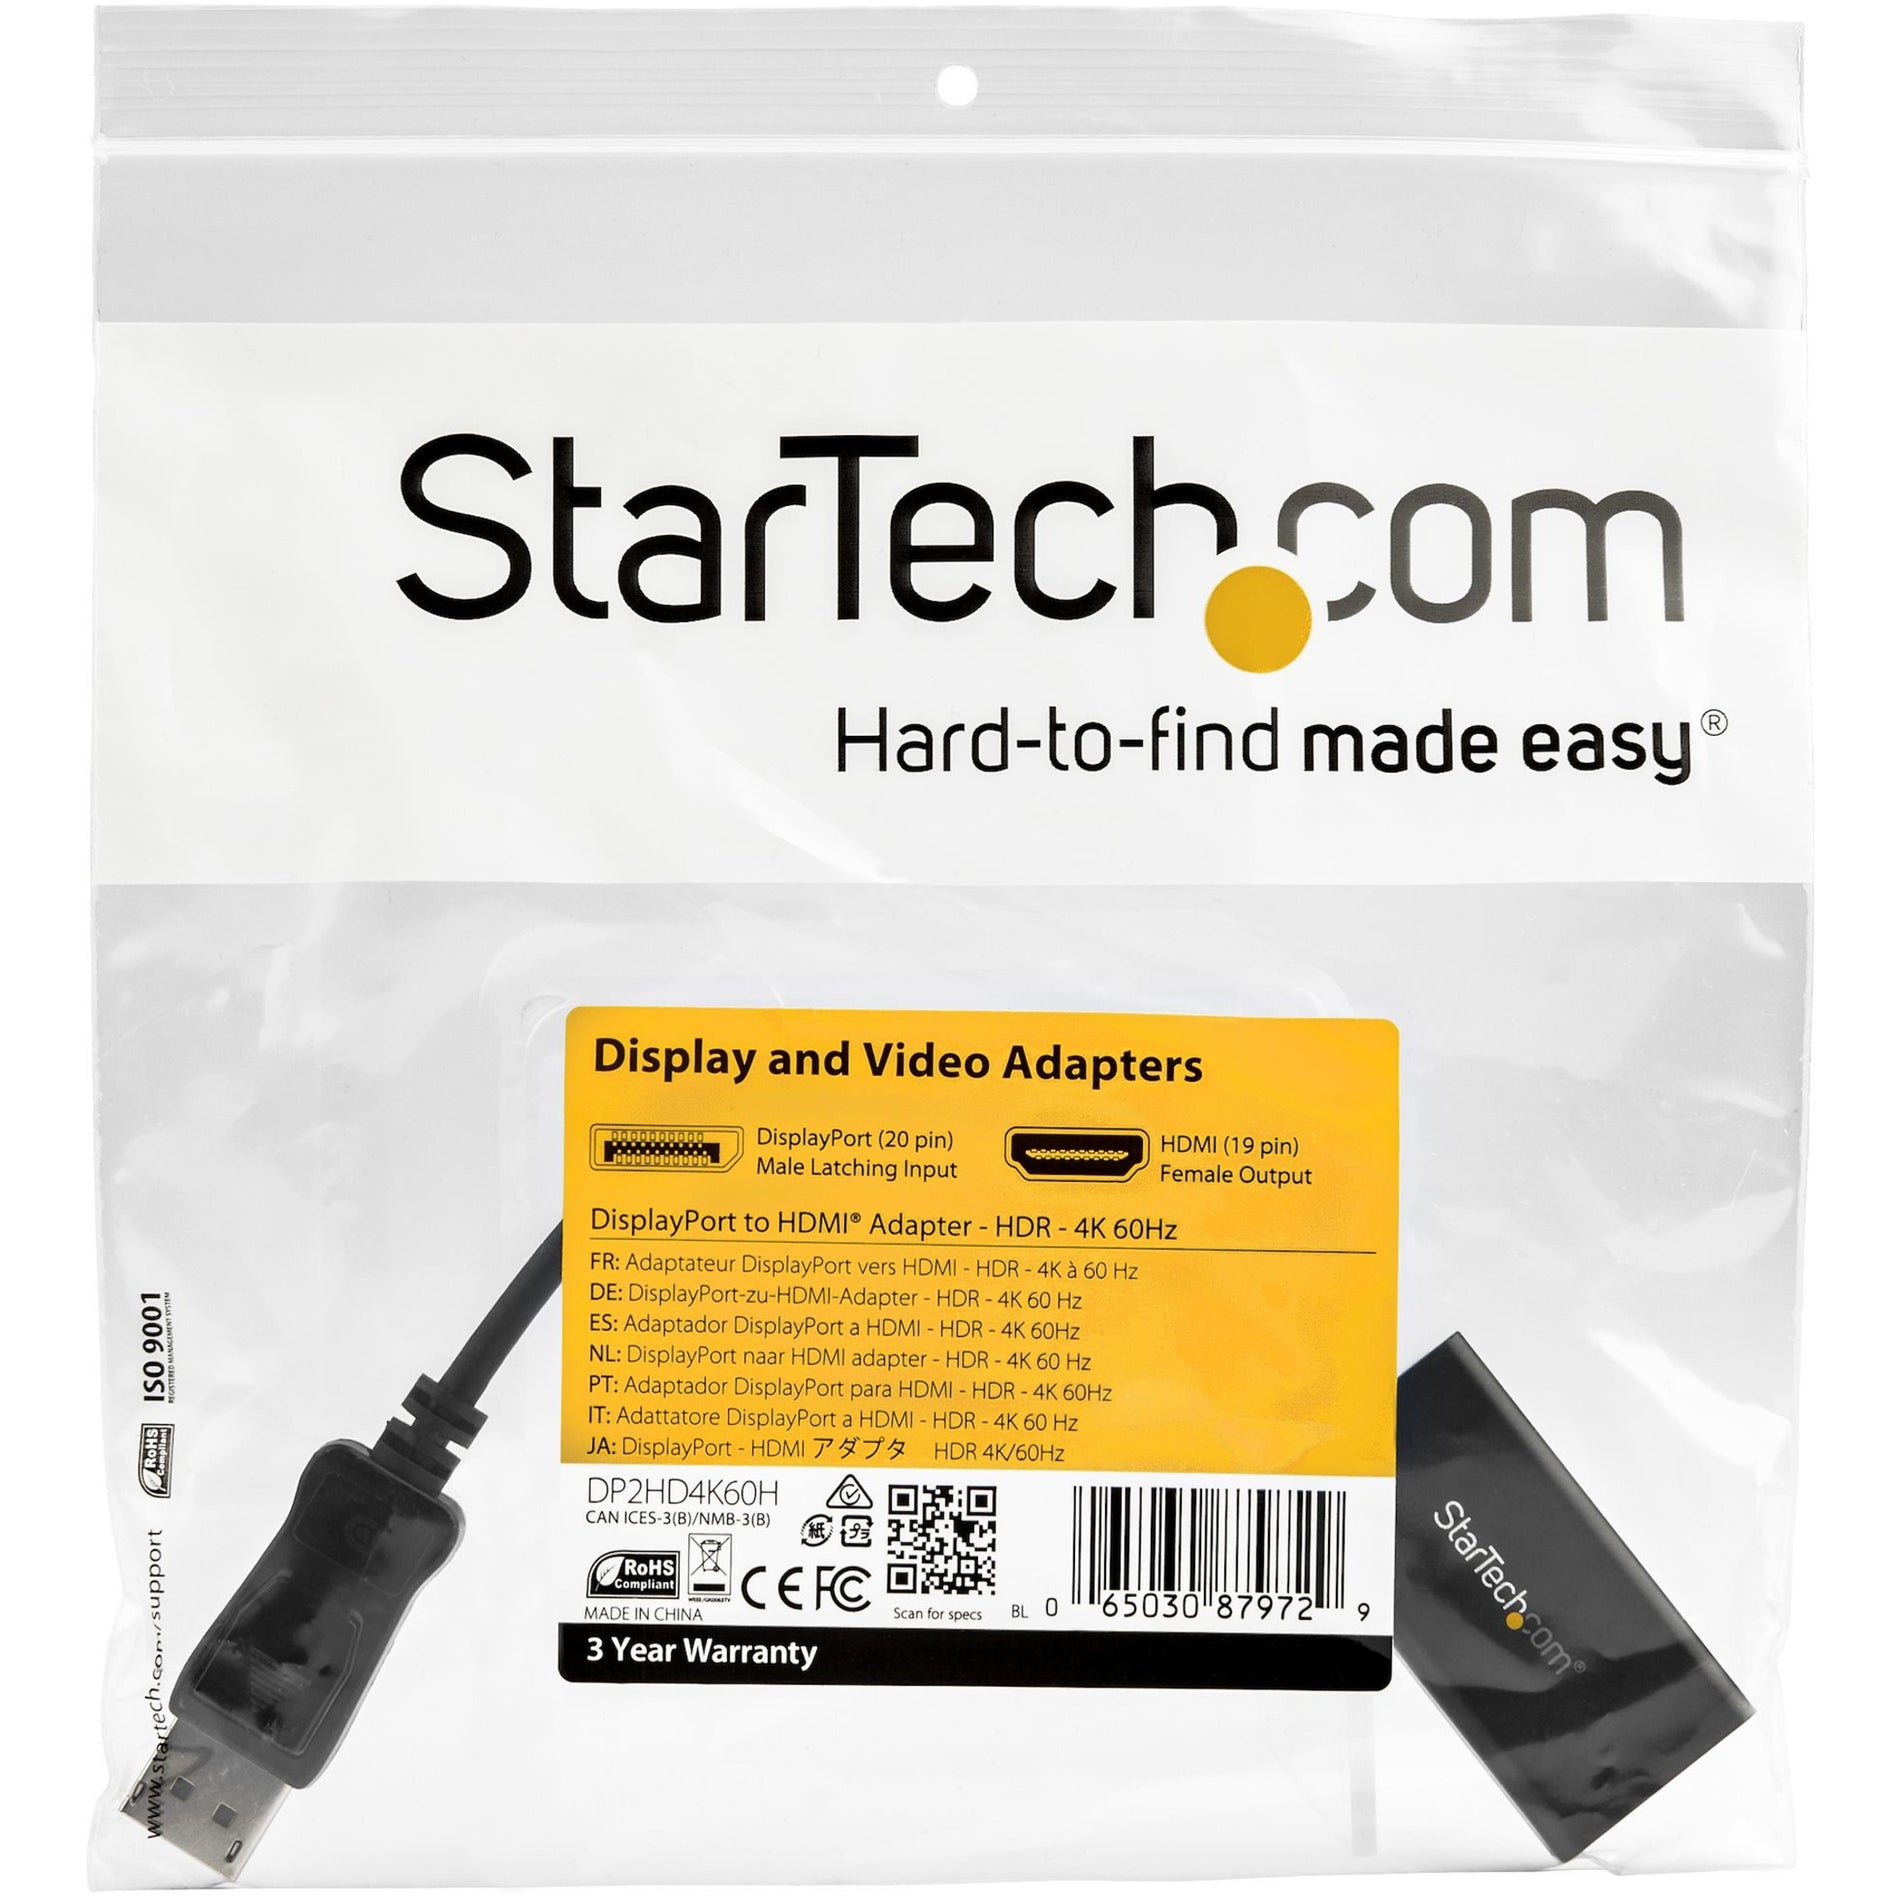 Adaptador de DisplayPort a HDMI StarTech.com DP2HD4K60H con HDR - 4K 60Hz Negro. Traduce StarTech.com como StarTech.com.